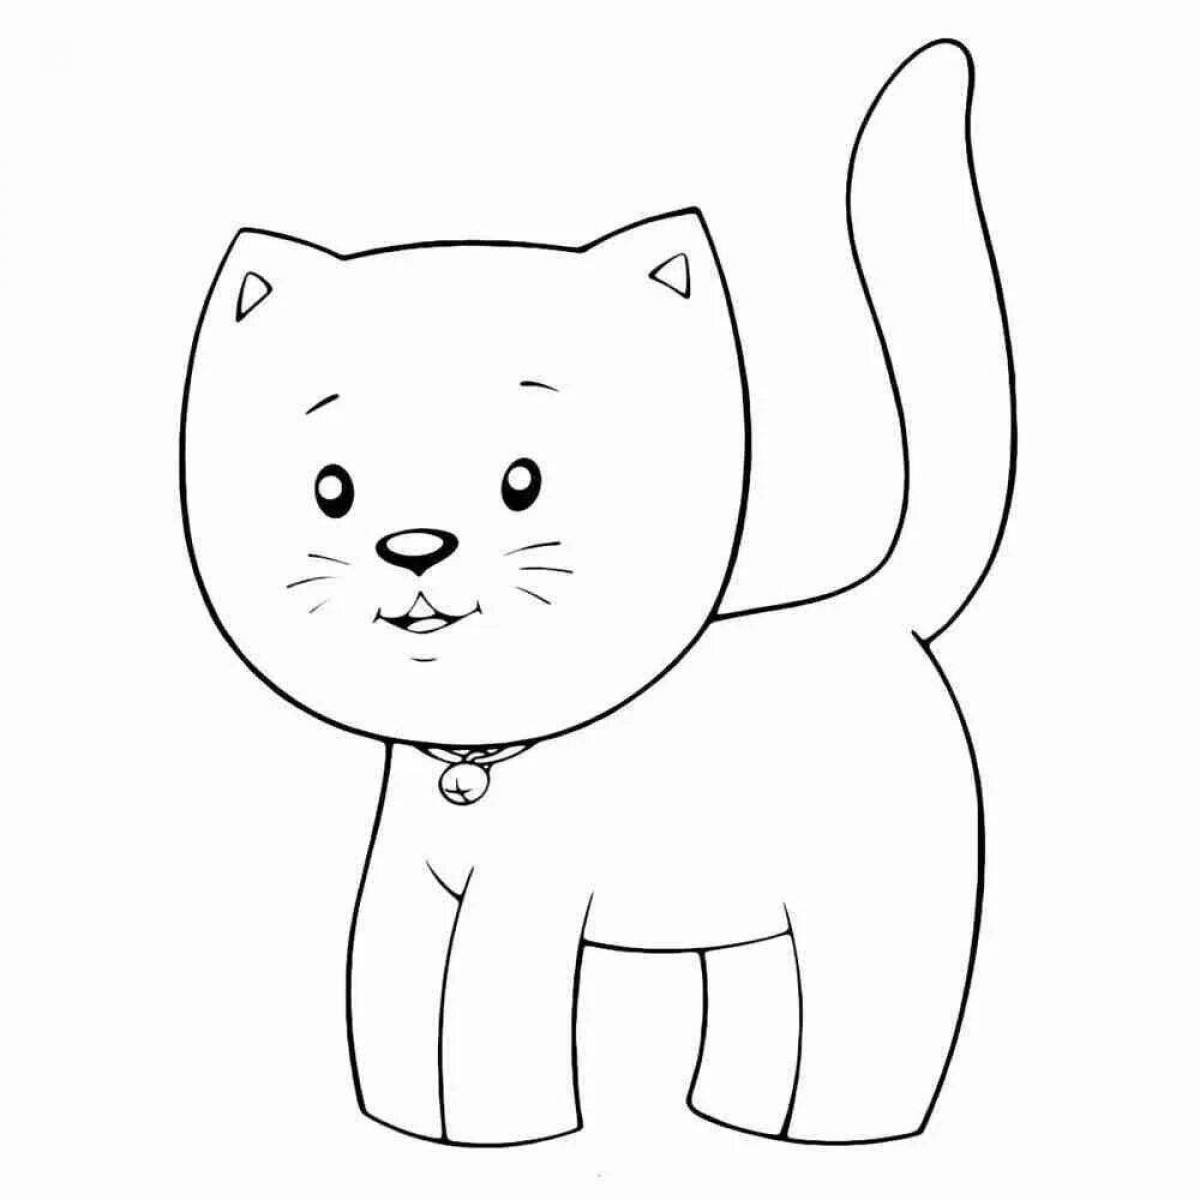 Fun coloring cat simple